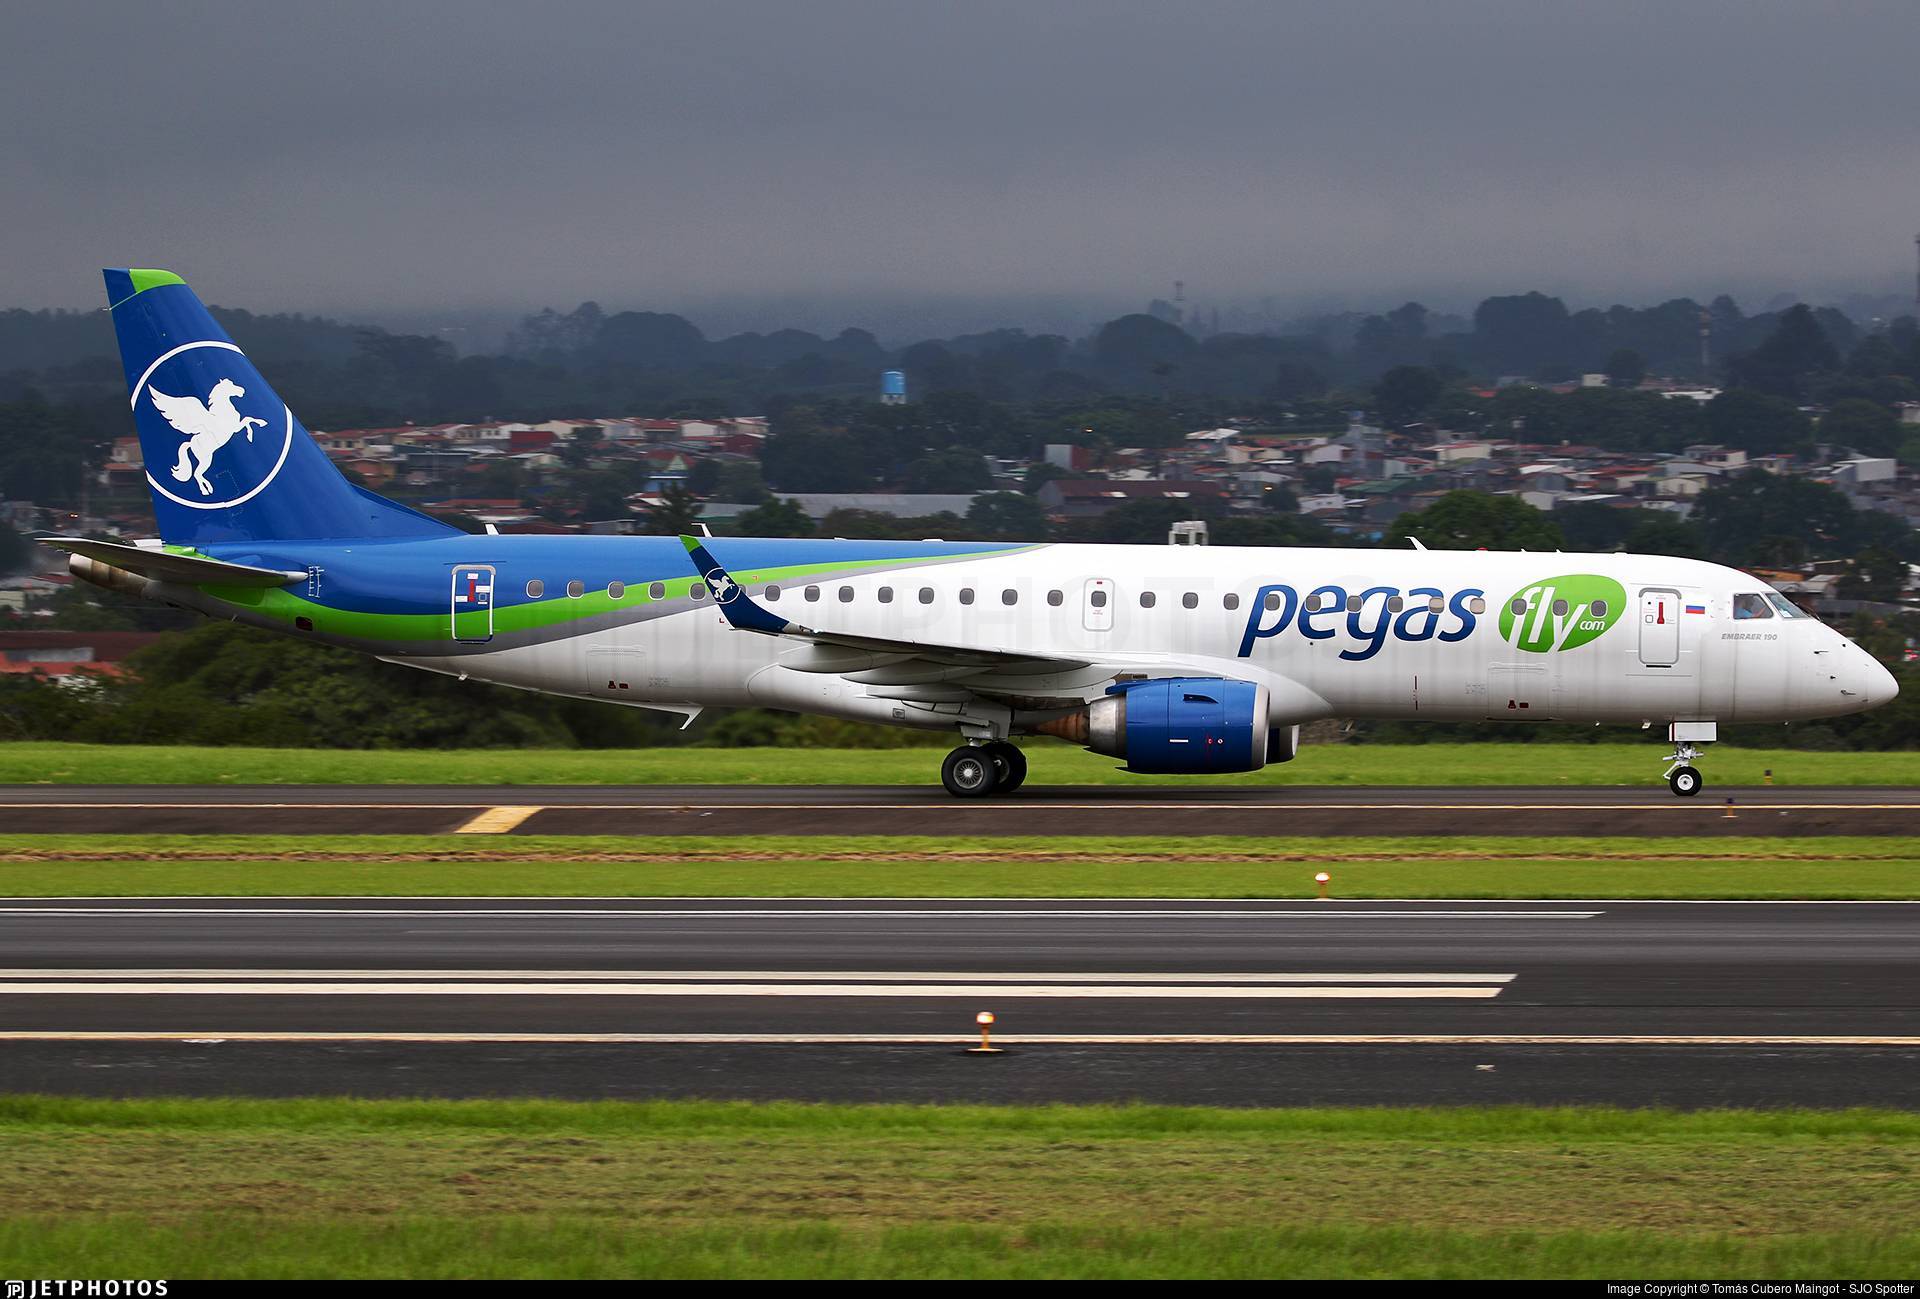 Авиакомпания пегас флай (pegas fly)